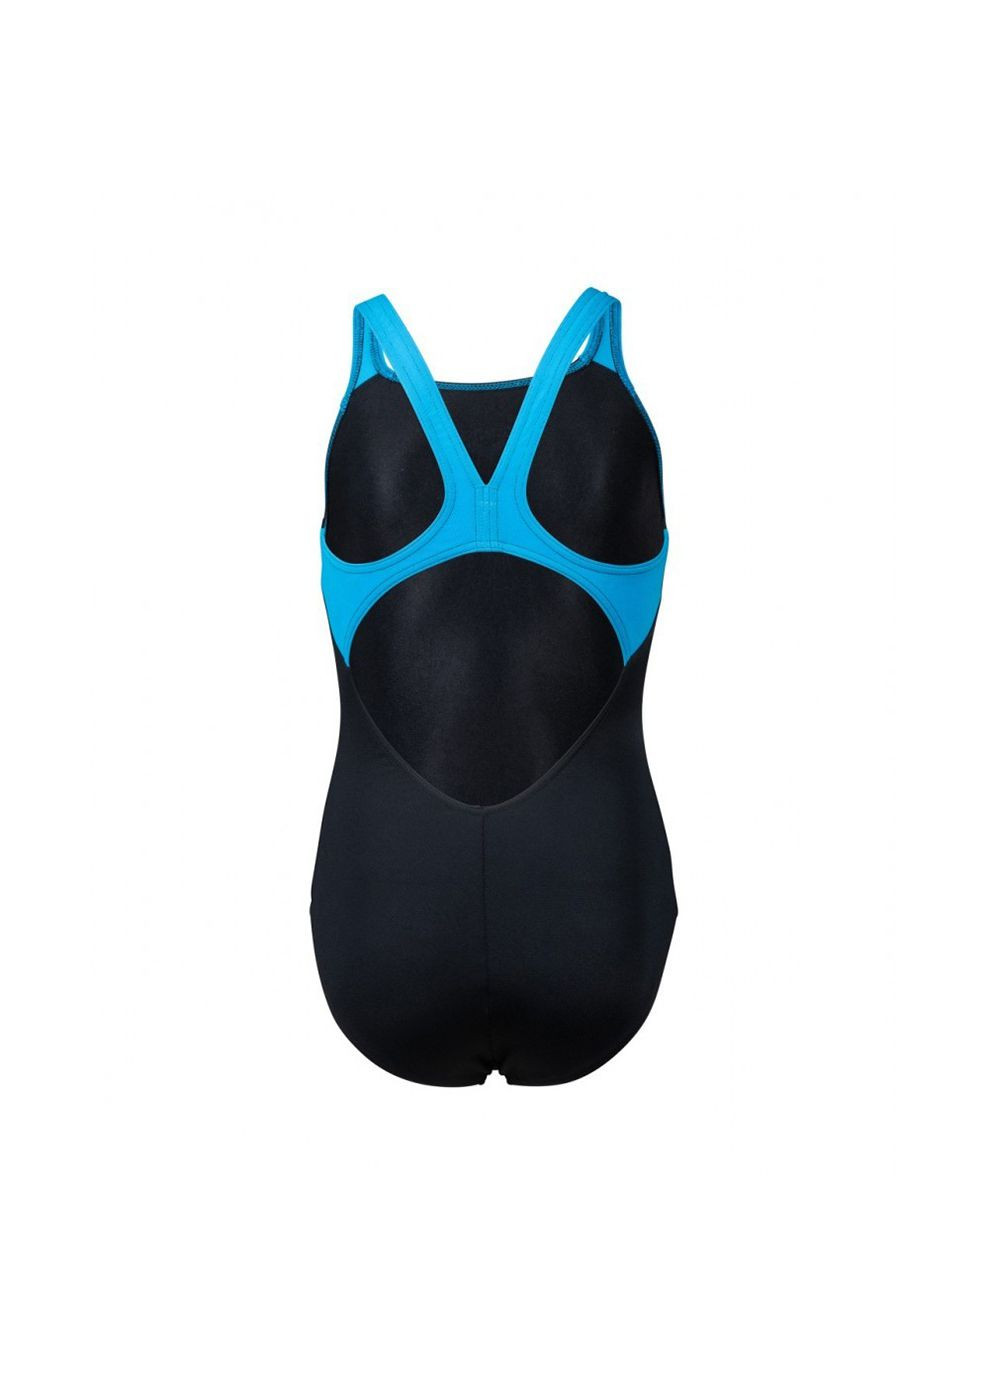 Комбинированный демисезонный купальник закрытый для девочек butterfly swimsuit v back черный, голубой дет Arena